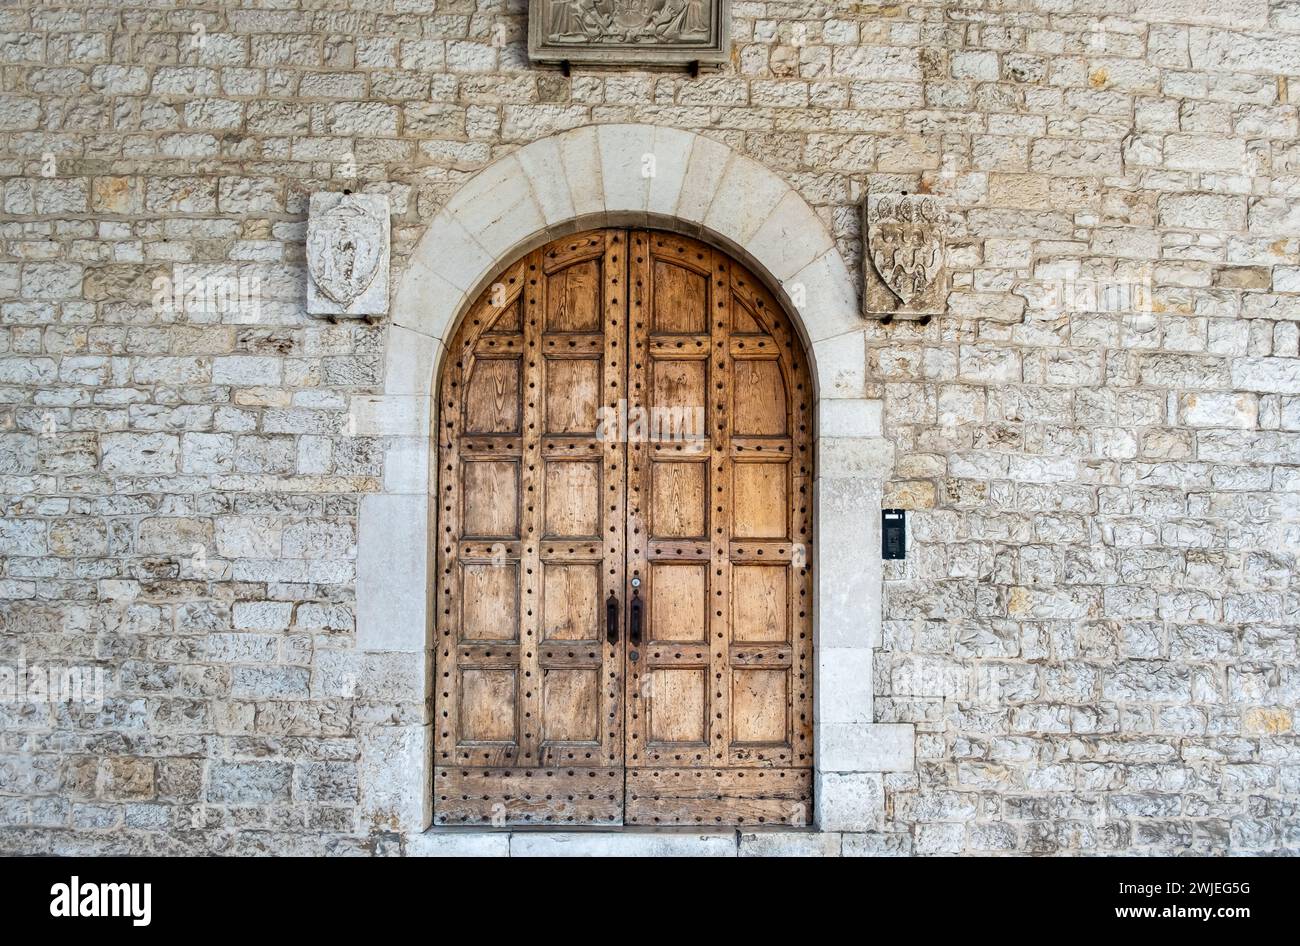 Detalle del portal de la Basílica de San Nicolás en el centro histórico de Bari, región de Puglia (Apulia), sur de Italia, Europa Foto de stock